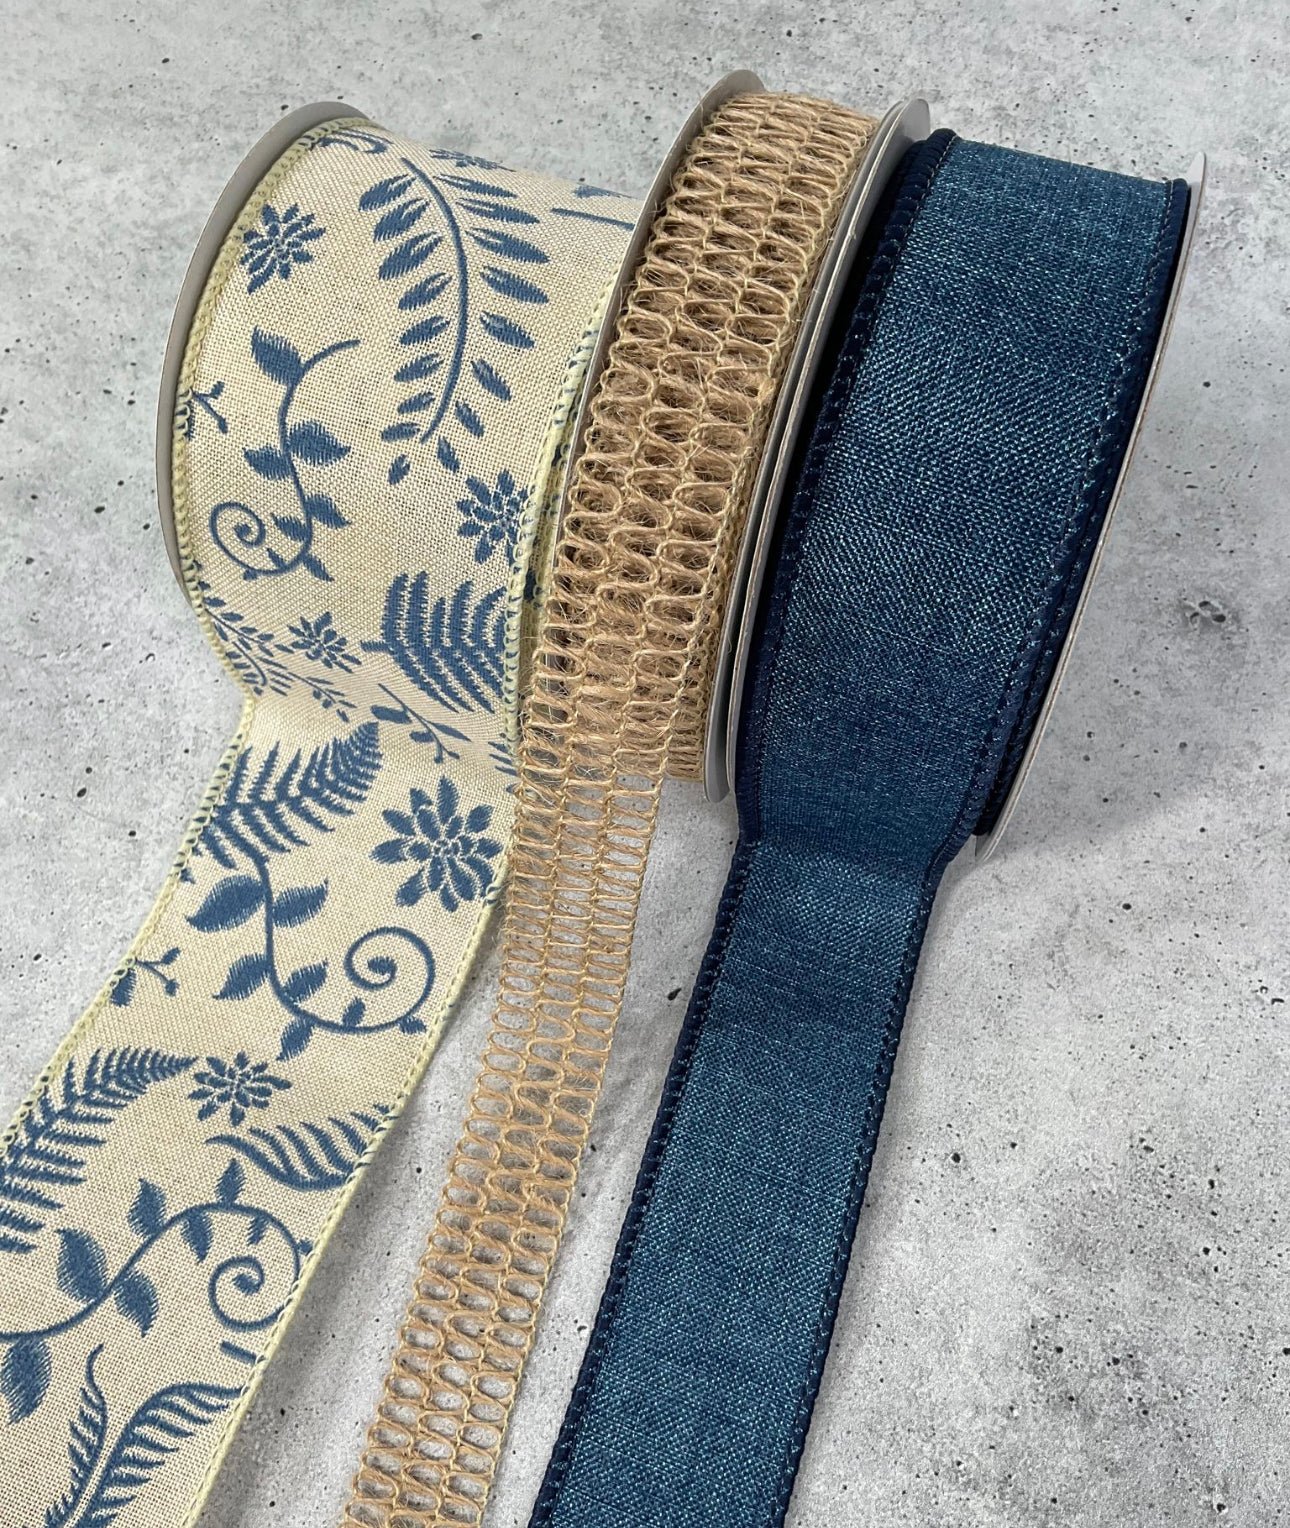 Blue jean fern bow bundle x 3 ribbons - Greenery MarketJeanfernx3